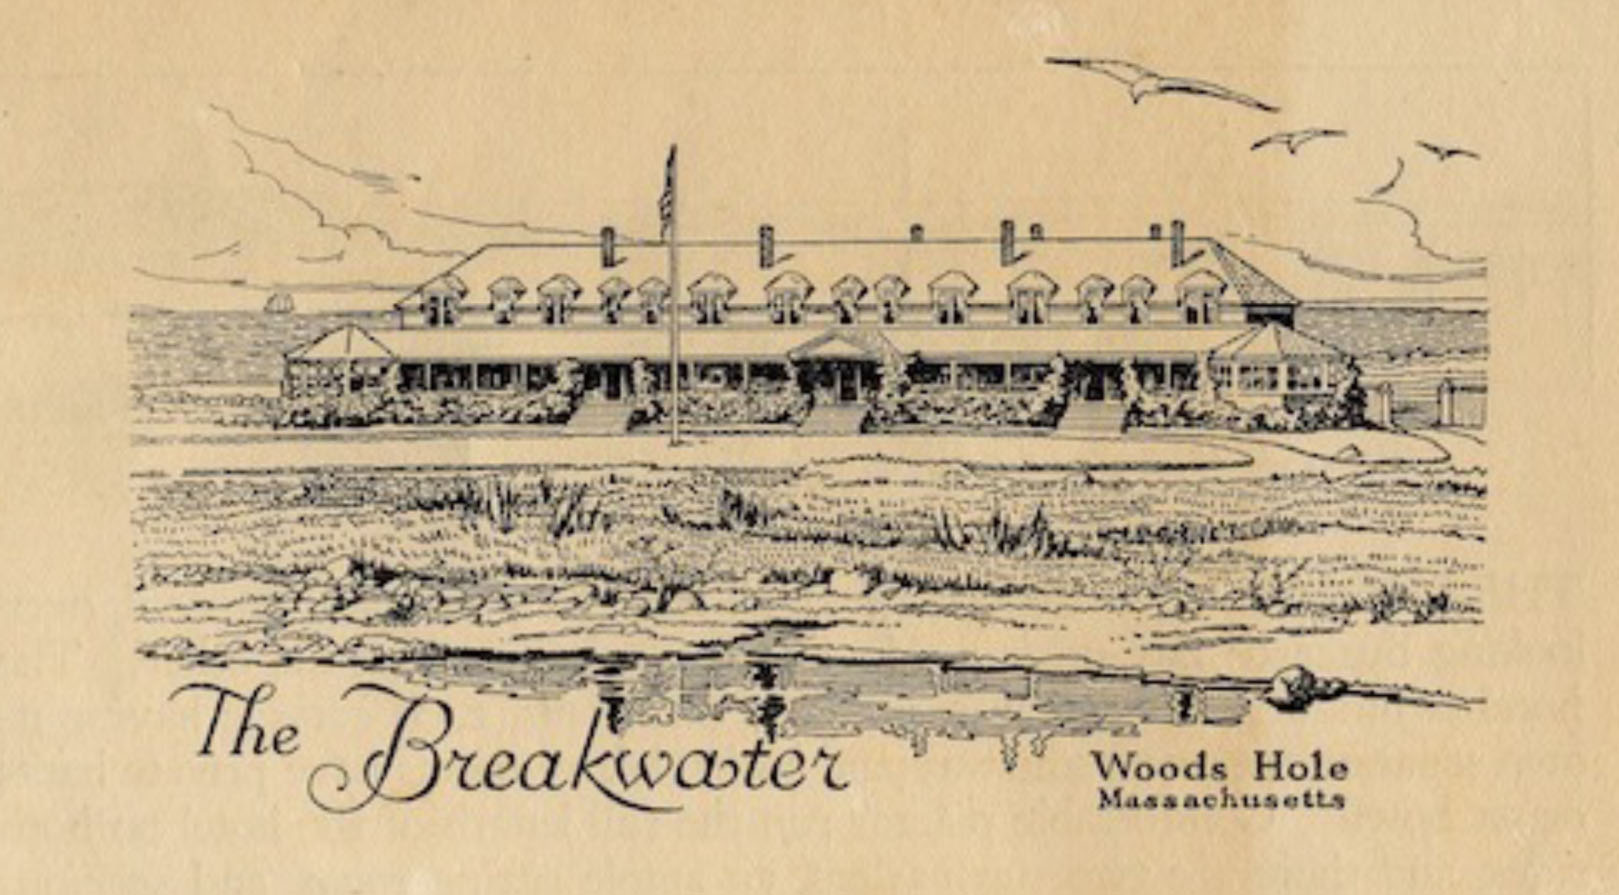 The Breakwater Hotel